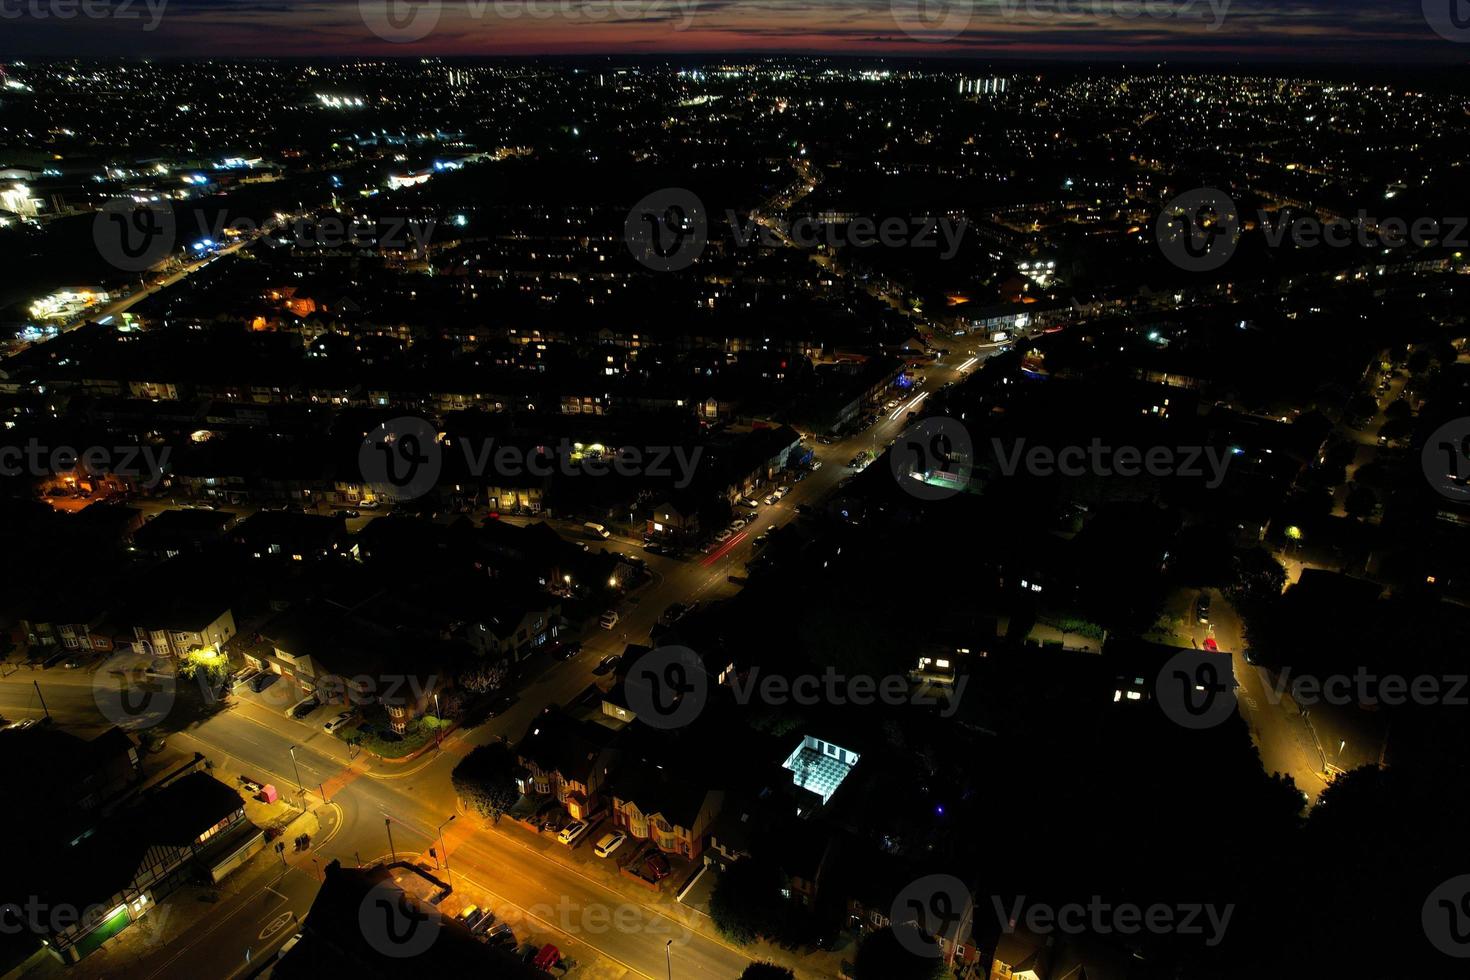 bela vista de alto ângulo da cidade de luton da inglaterra à noite, imagens do drone após o pôr do sol foto